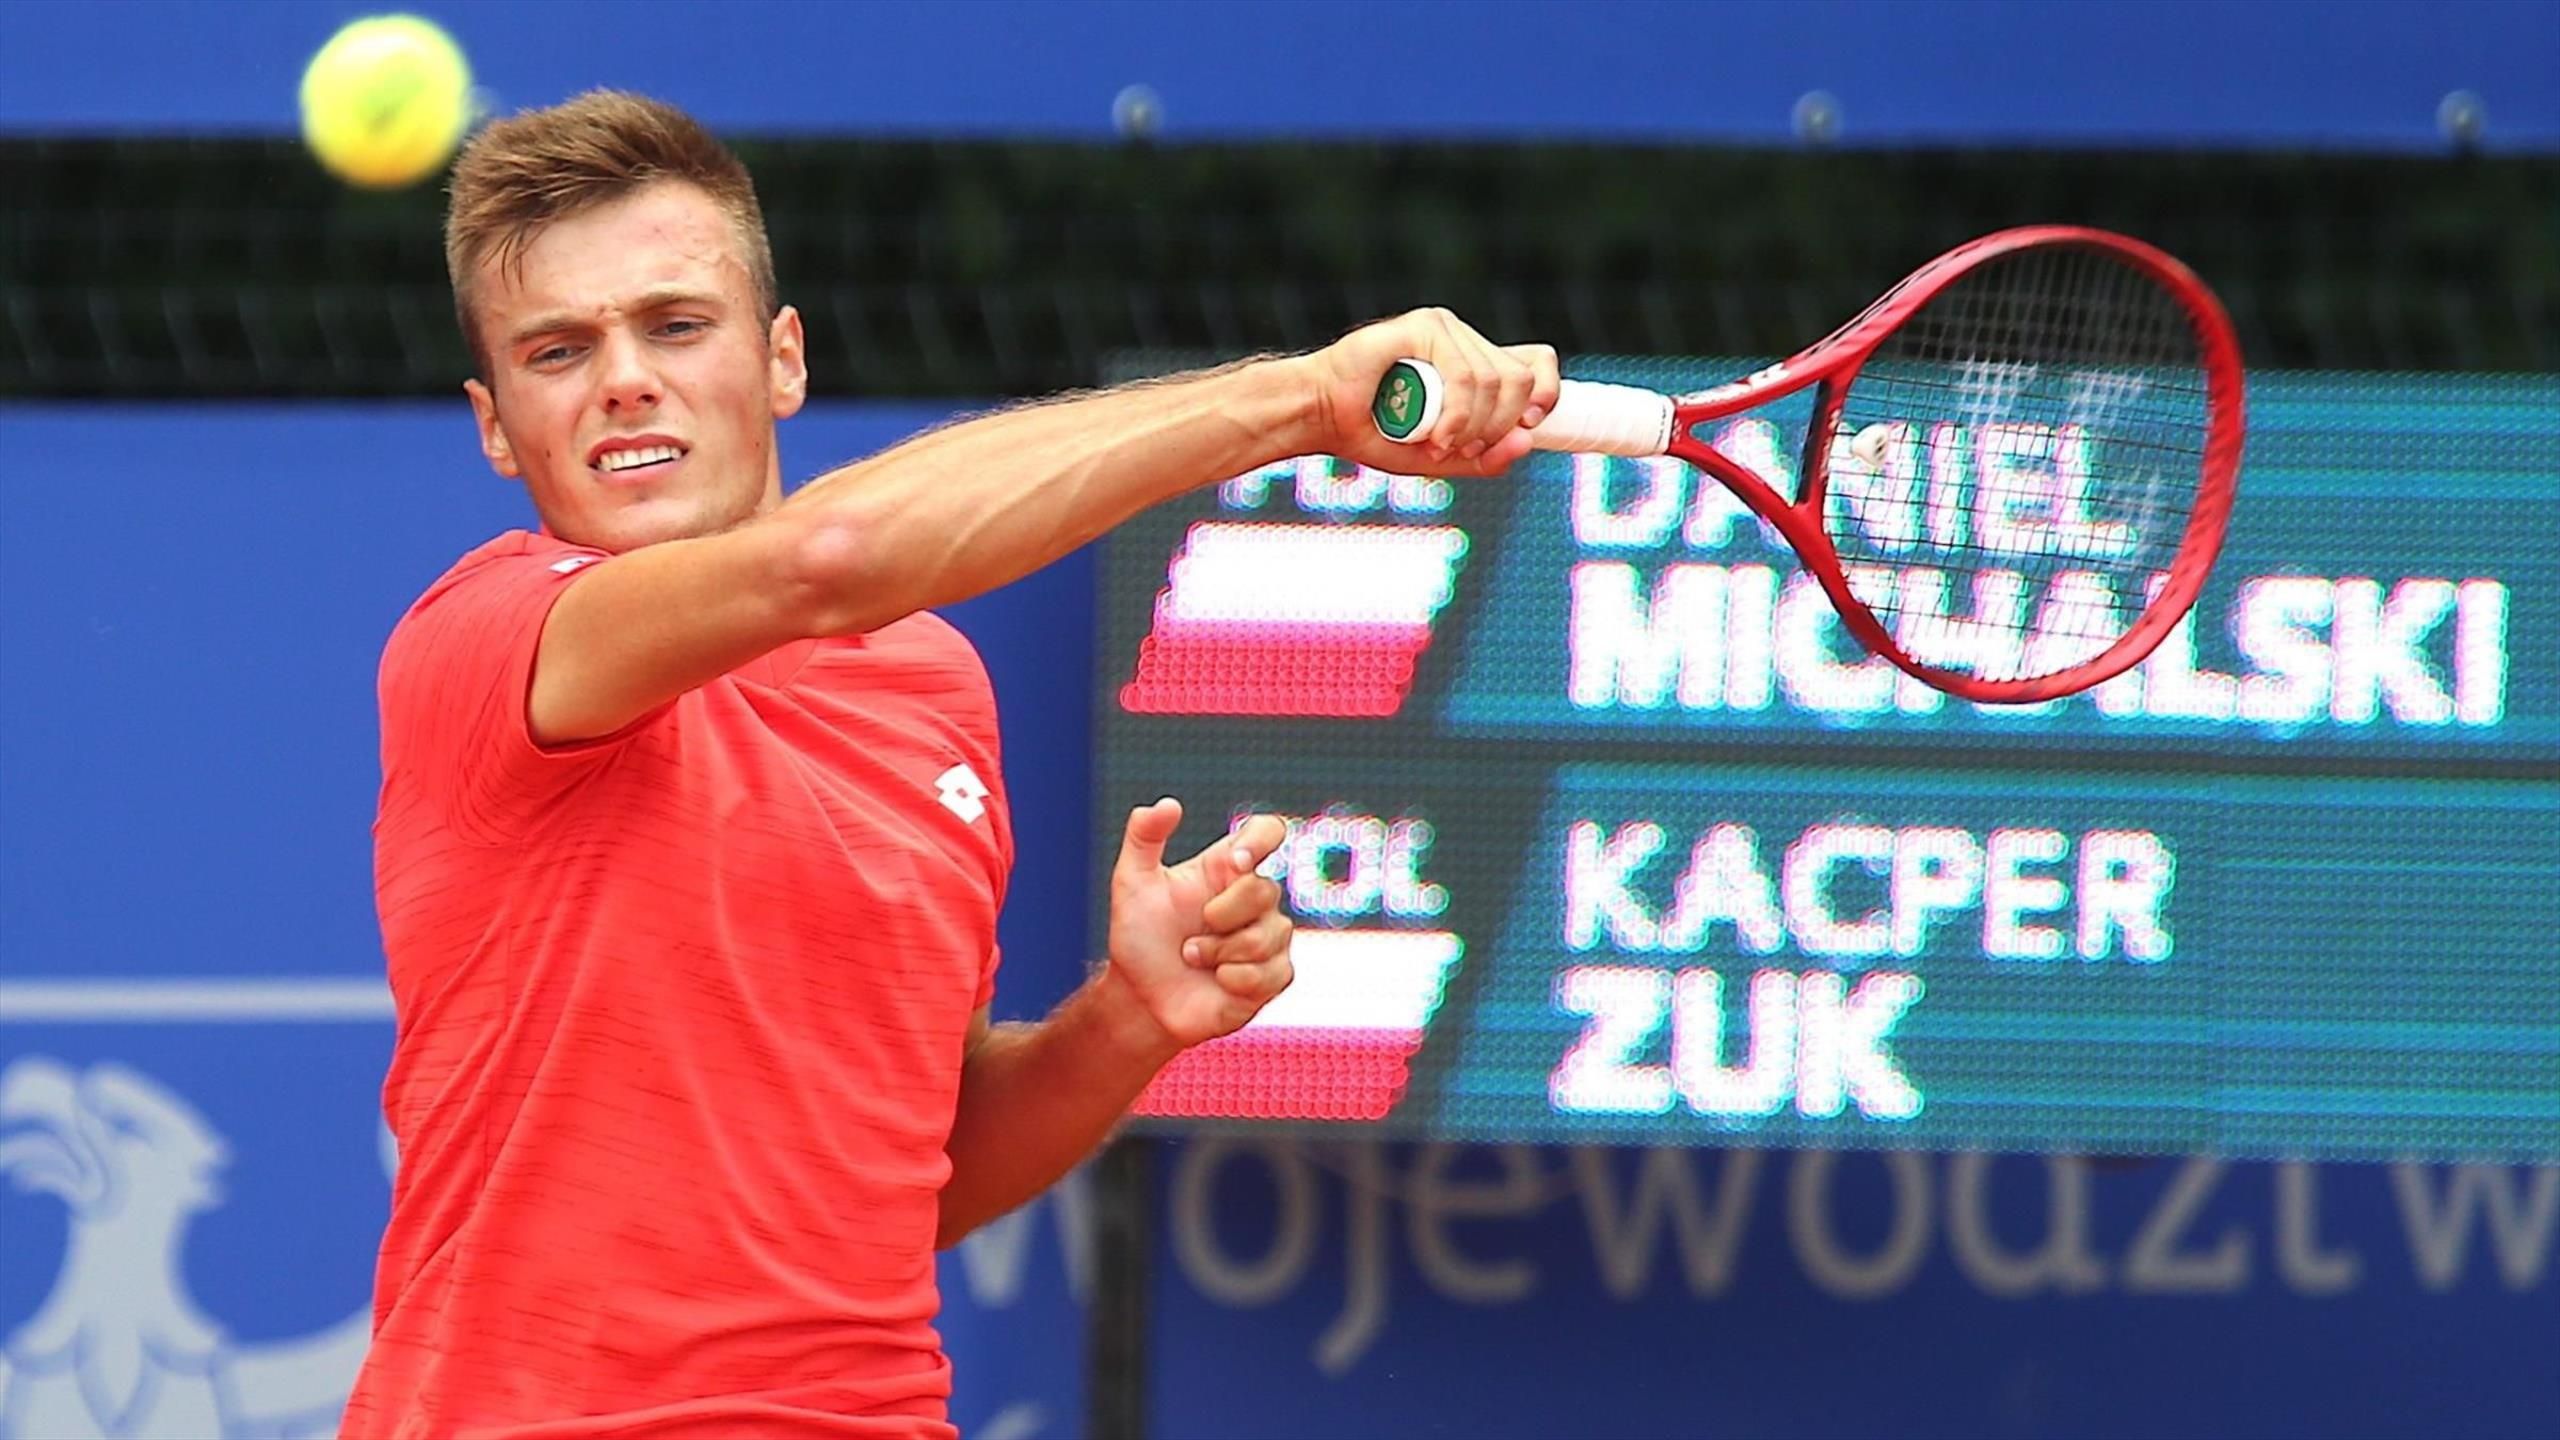 Kacper Żuk po raz pierwszy w karierze mistrzem Polski - Tenis - Eurosport